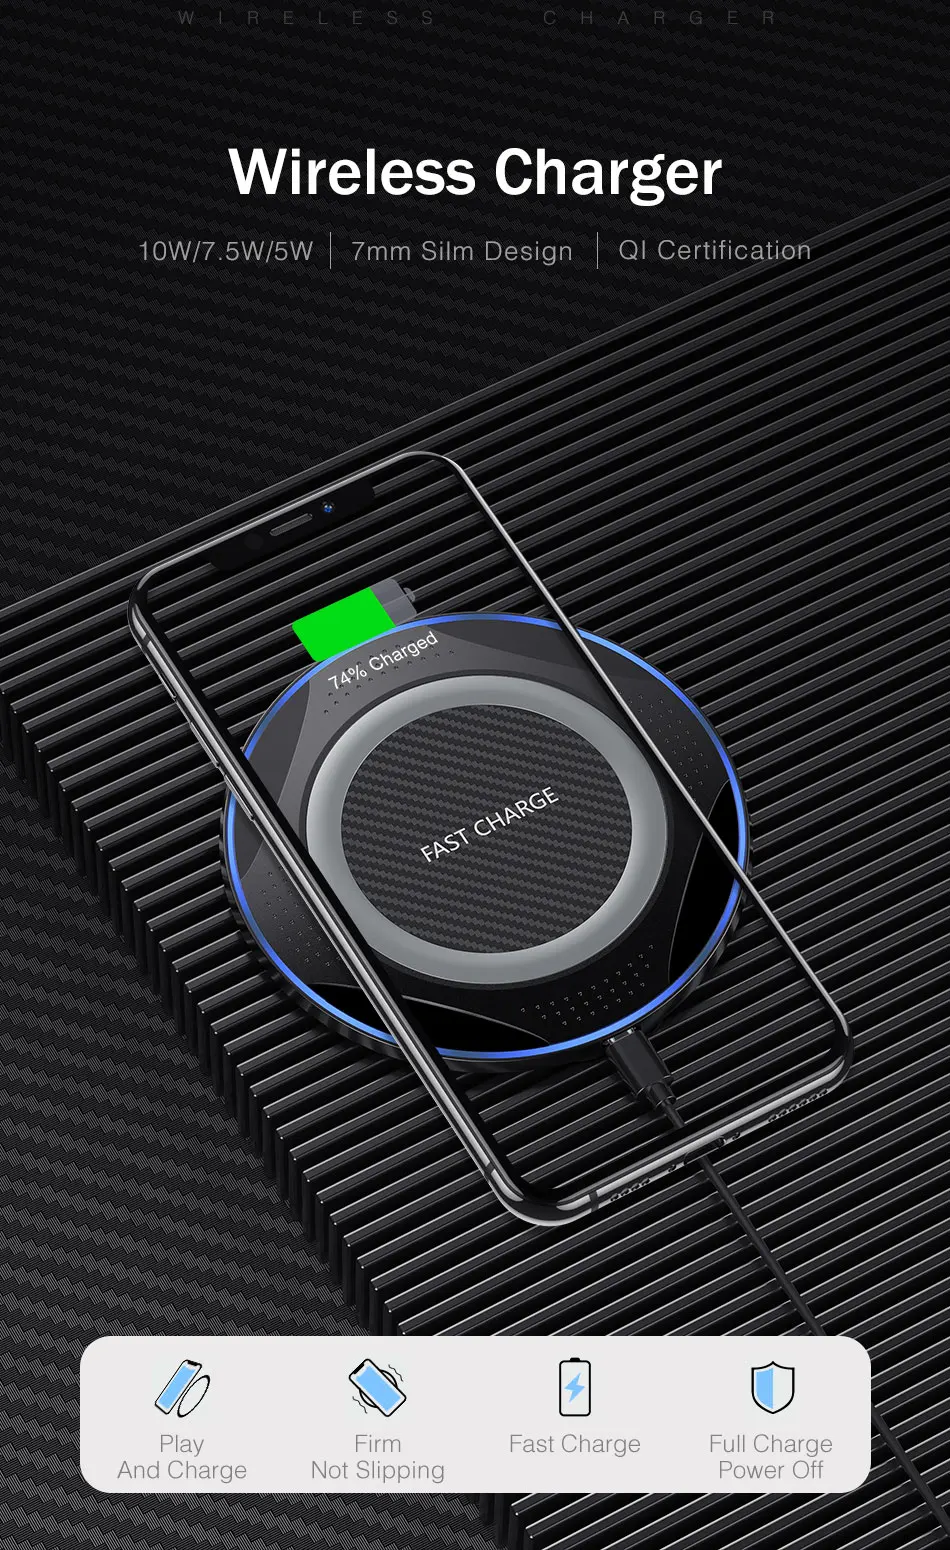 Беспроводное зарядное устройство FDGAO Quick Charge 3,0 для iPhone 11 Pro XS Max X 8 Airpods 10W быстрая зарядка для samsung Note 10 9 S10 S9